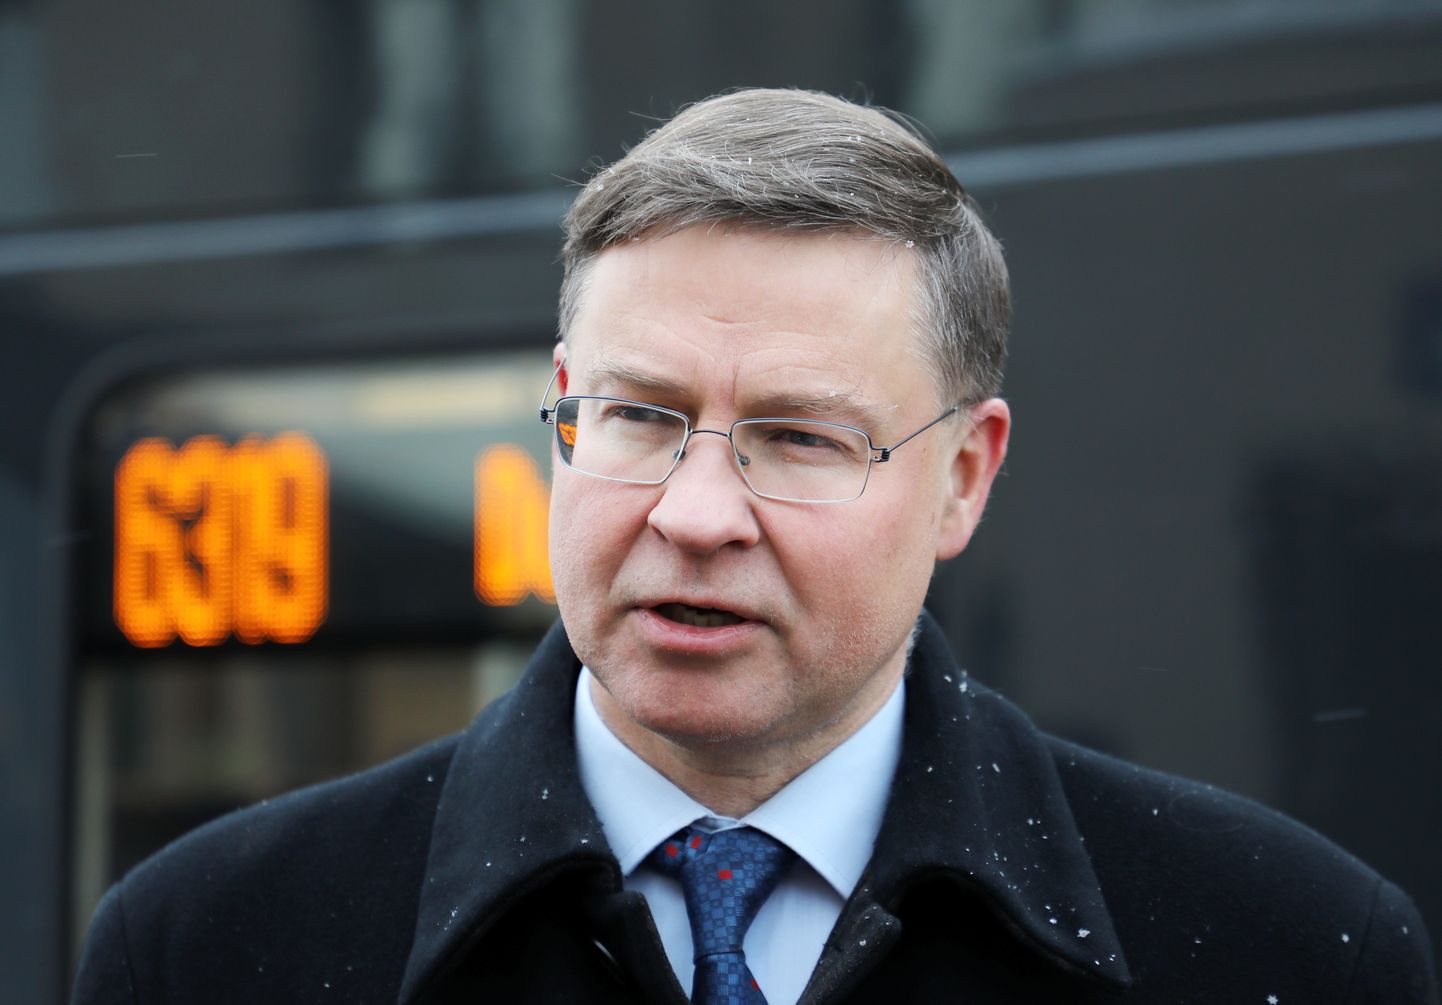 Eiropas Komisijas priekšsēdētājas izpildvietnieks Valdis Dombrovskis piedalās jauno elektrovilcienu "Vivi" pārvadājumu uzsākšanas svinīgajā pasākumā Rīgas Centrālajā dzelzceļa stacijā.